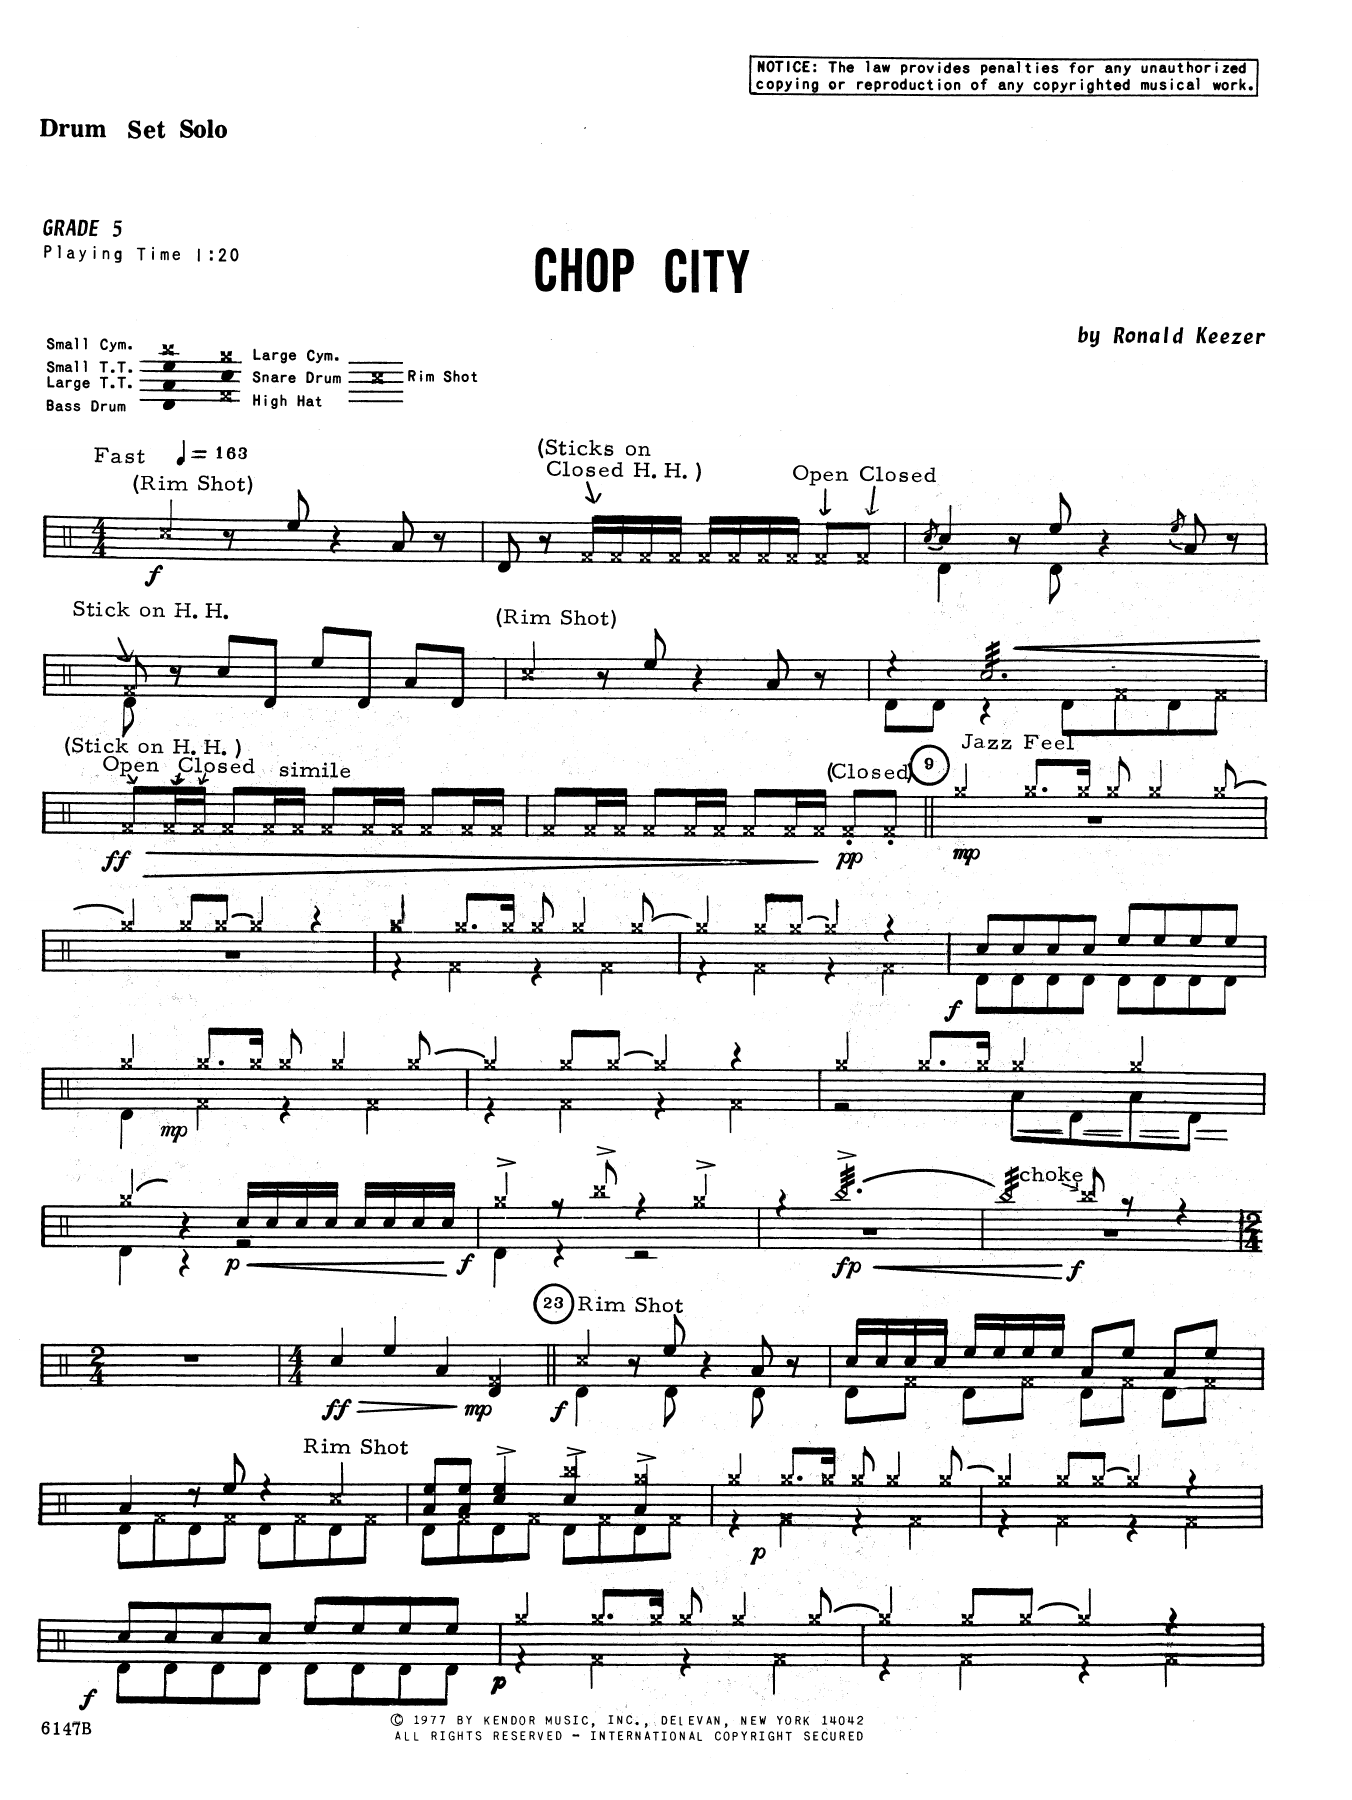 Download Keezer Chop City Sheet Music